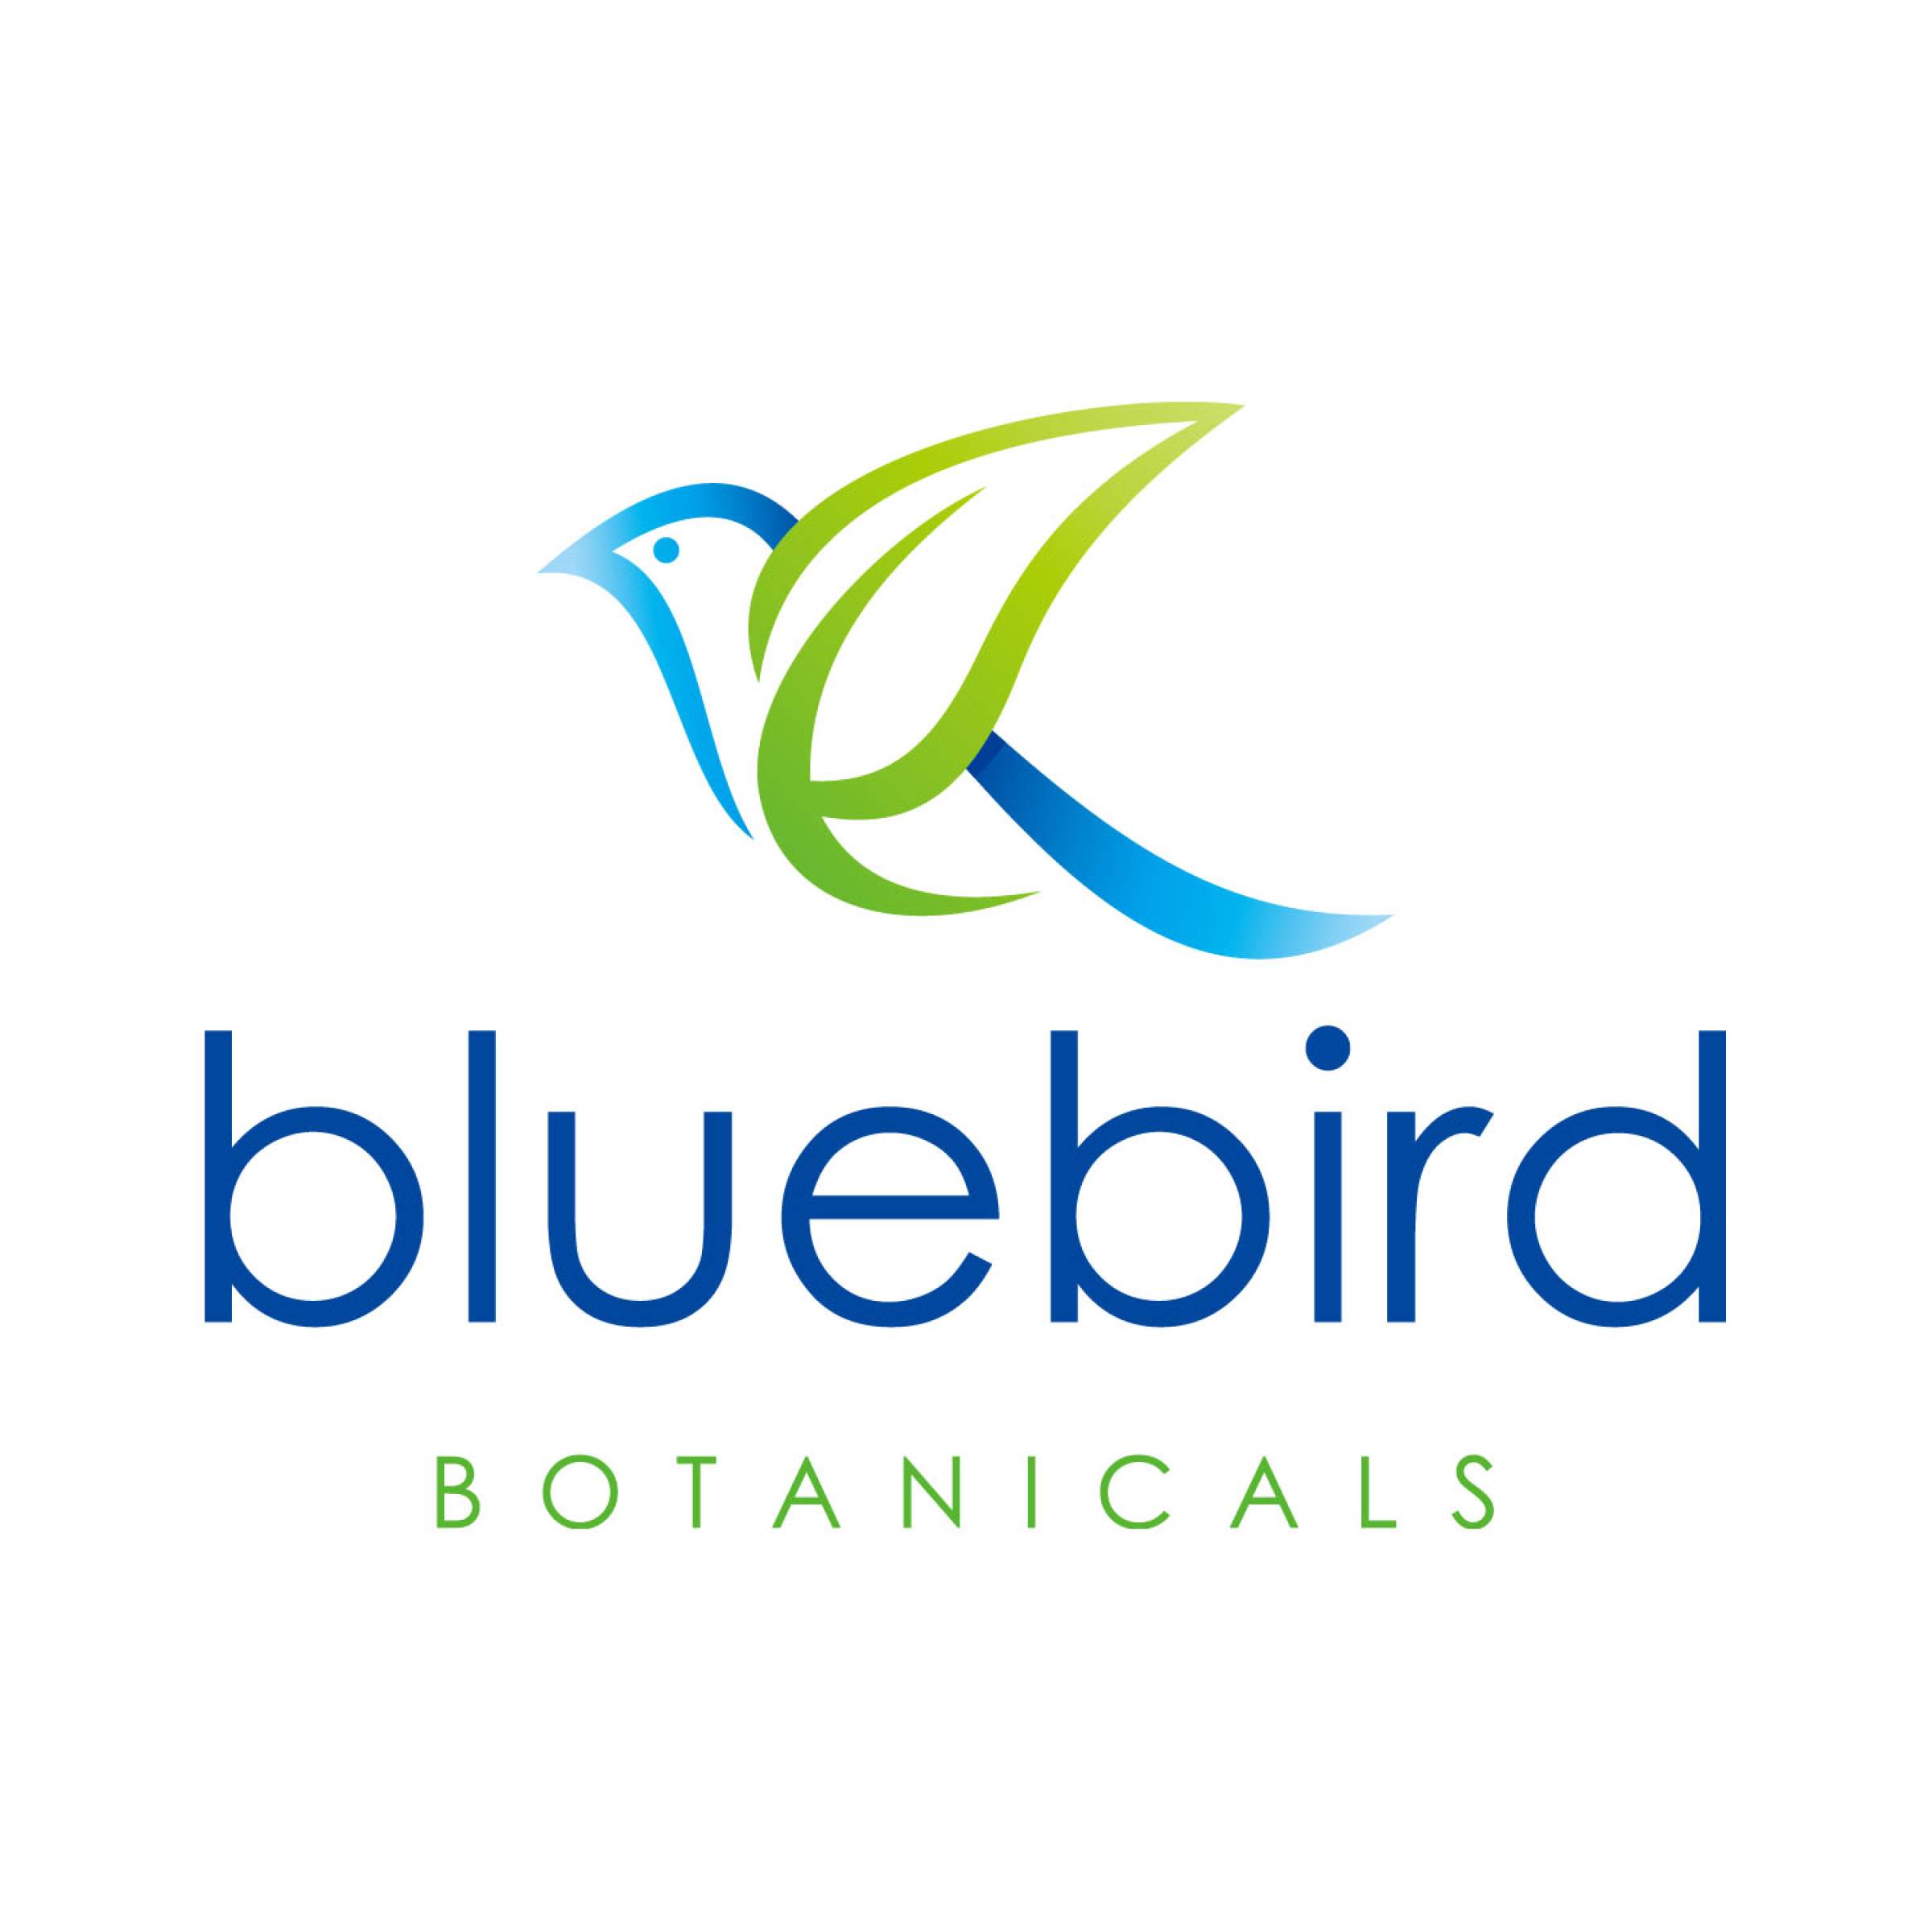 Blue Bird Brand Logo - News: Bluebird Botanicals Urges Congress to Remove Felony Provision